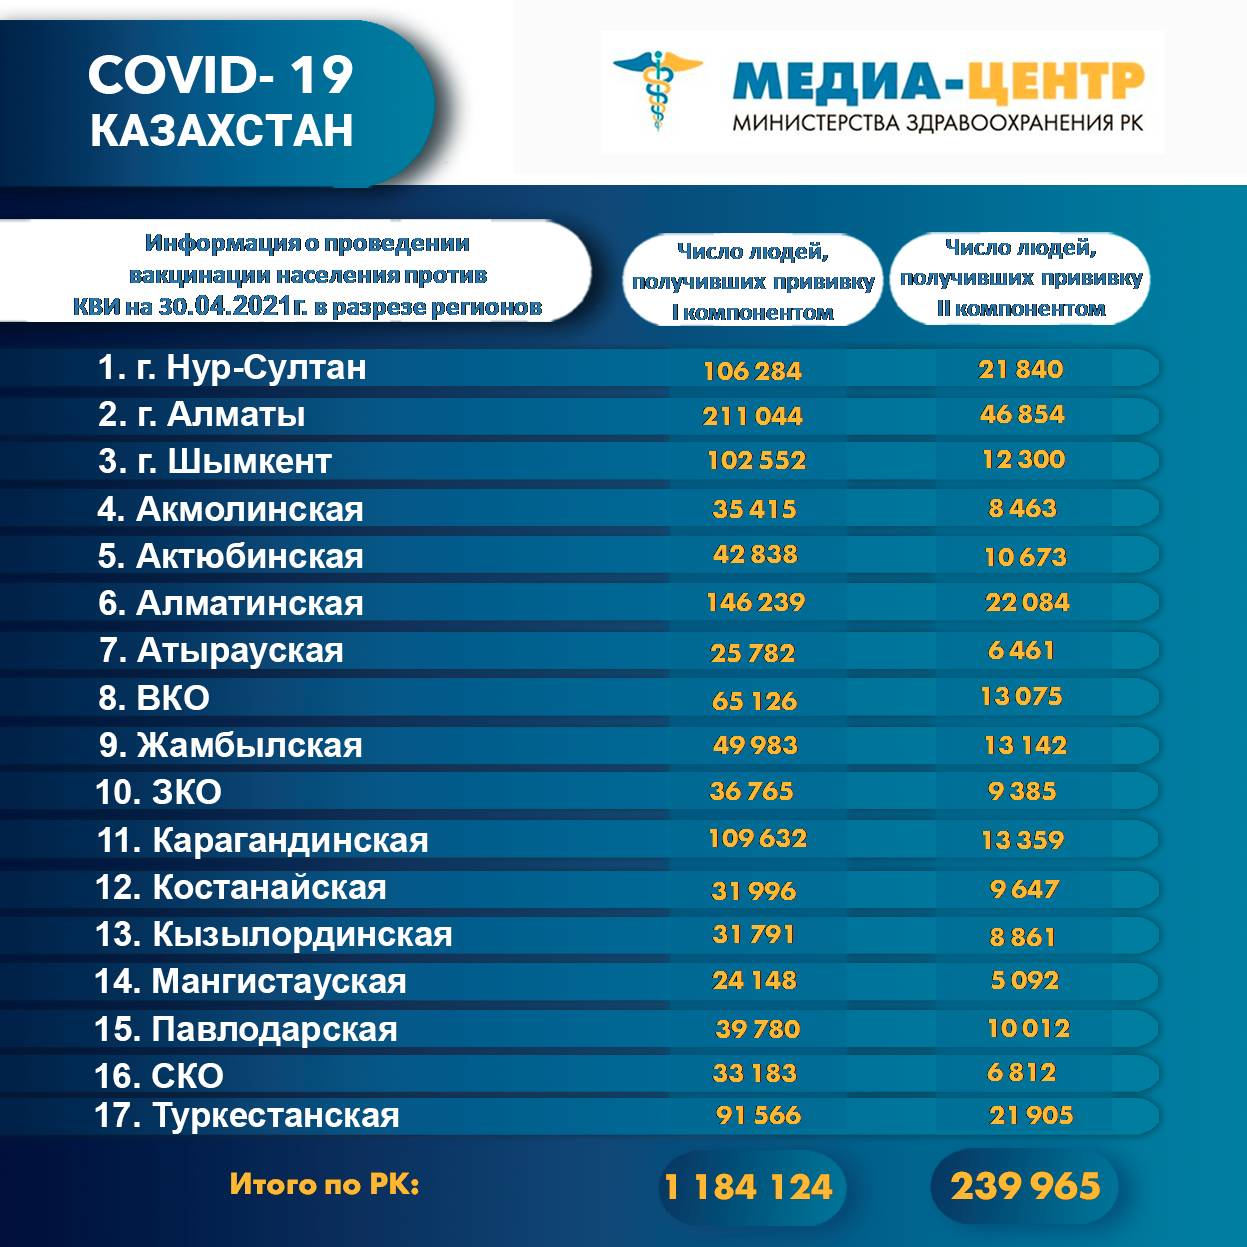 1 184 124 человек провакцинировано в Казахстане на 30 апреля 2021 г